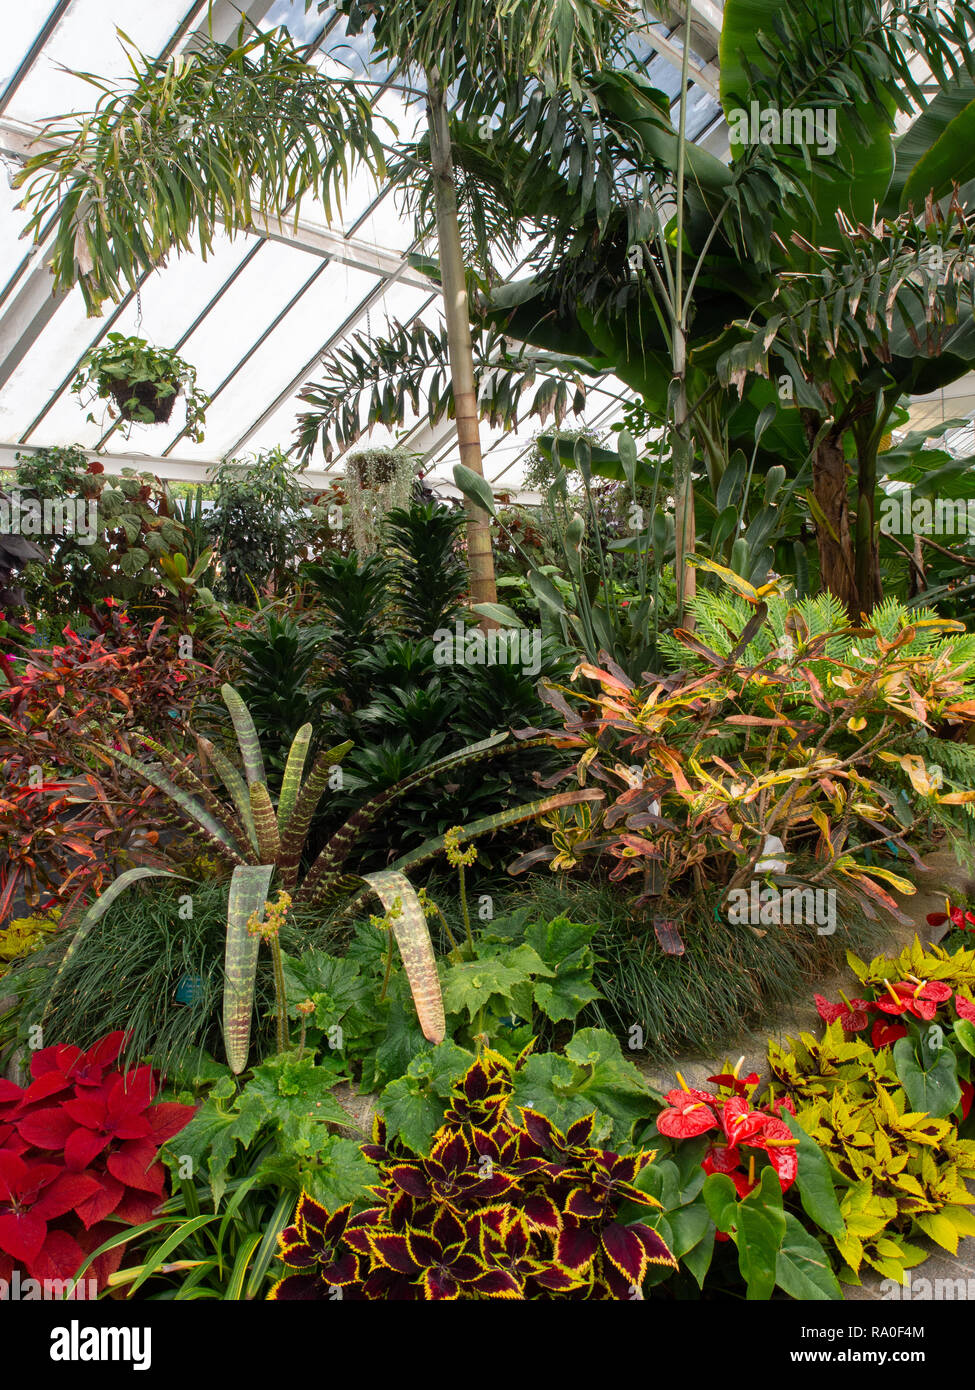 Plantas que crecen dentro de un invernadero Foto de stock